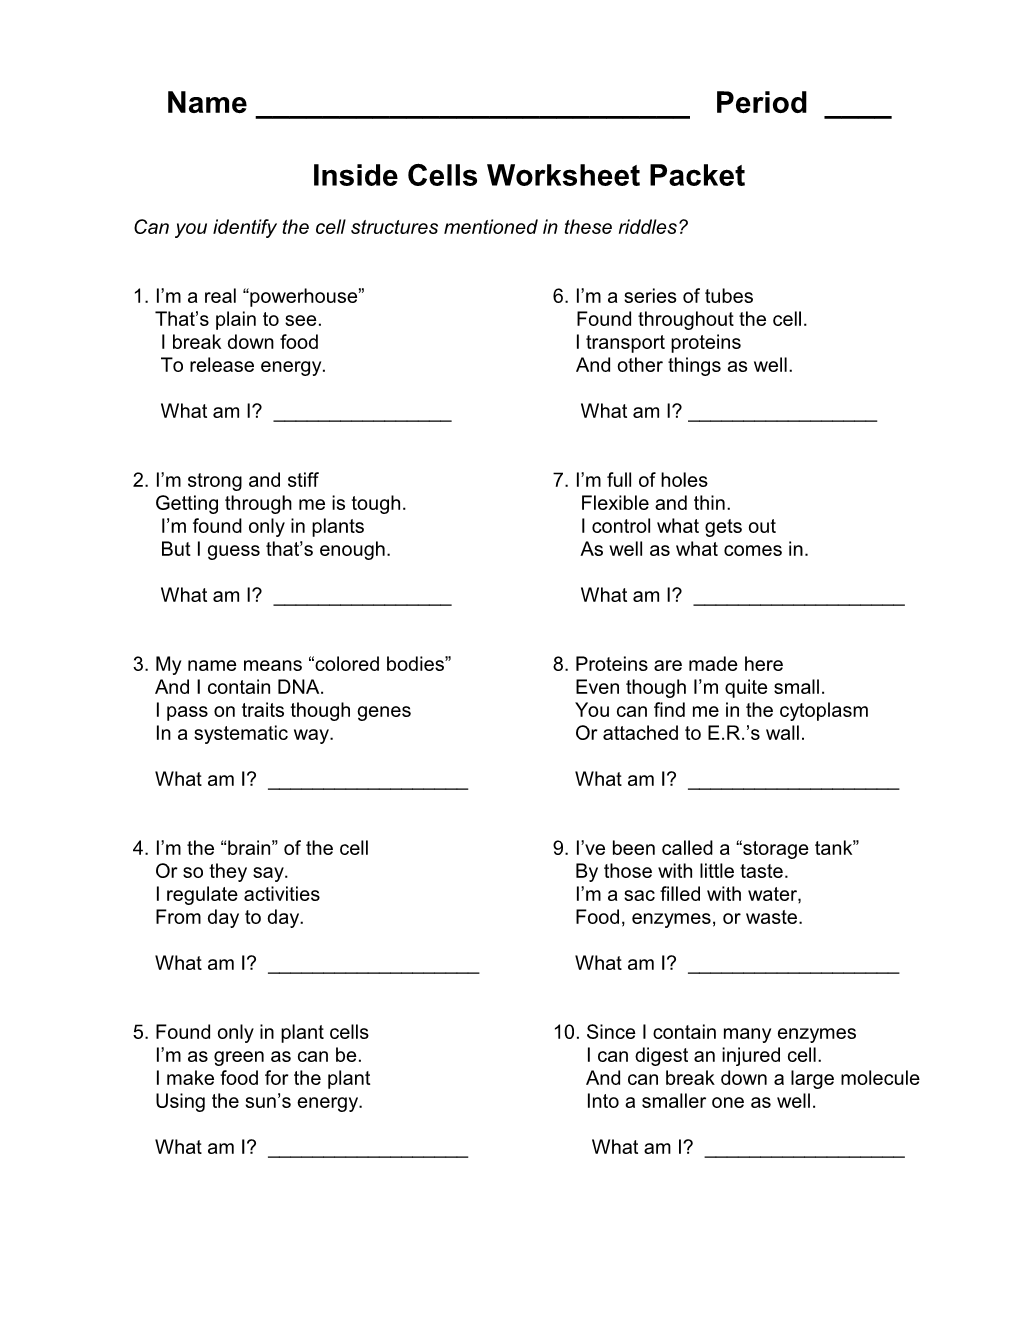 Inside Cells Worksheet Packet